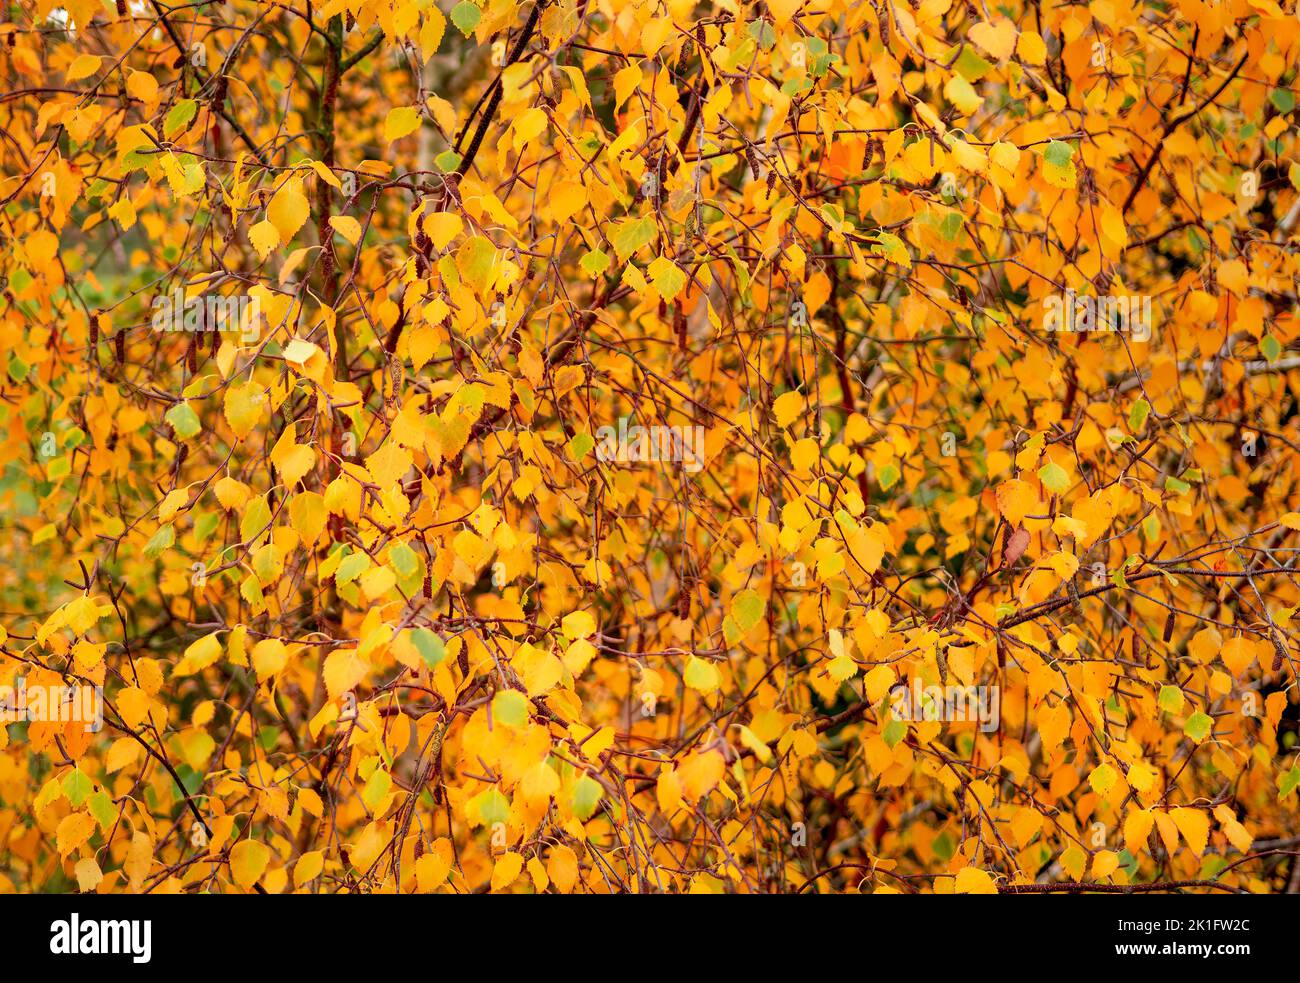 Imagen de borde a borde de hojas de haya otoñal sobre ramas en colores amarillos y anaranjados vivos Foto de stock